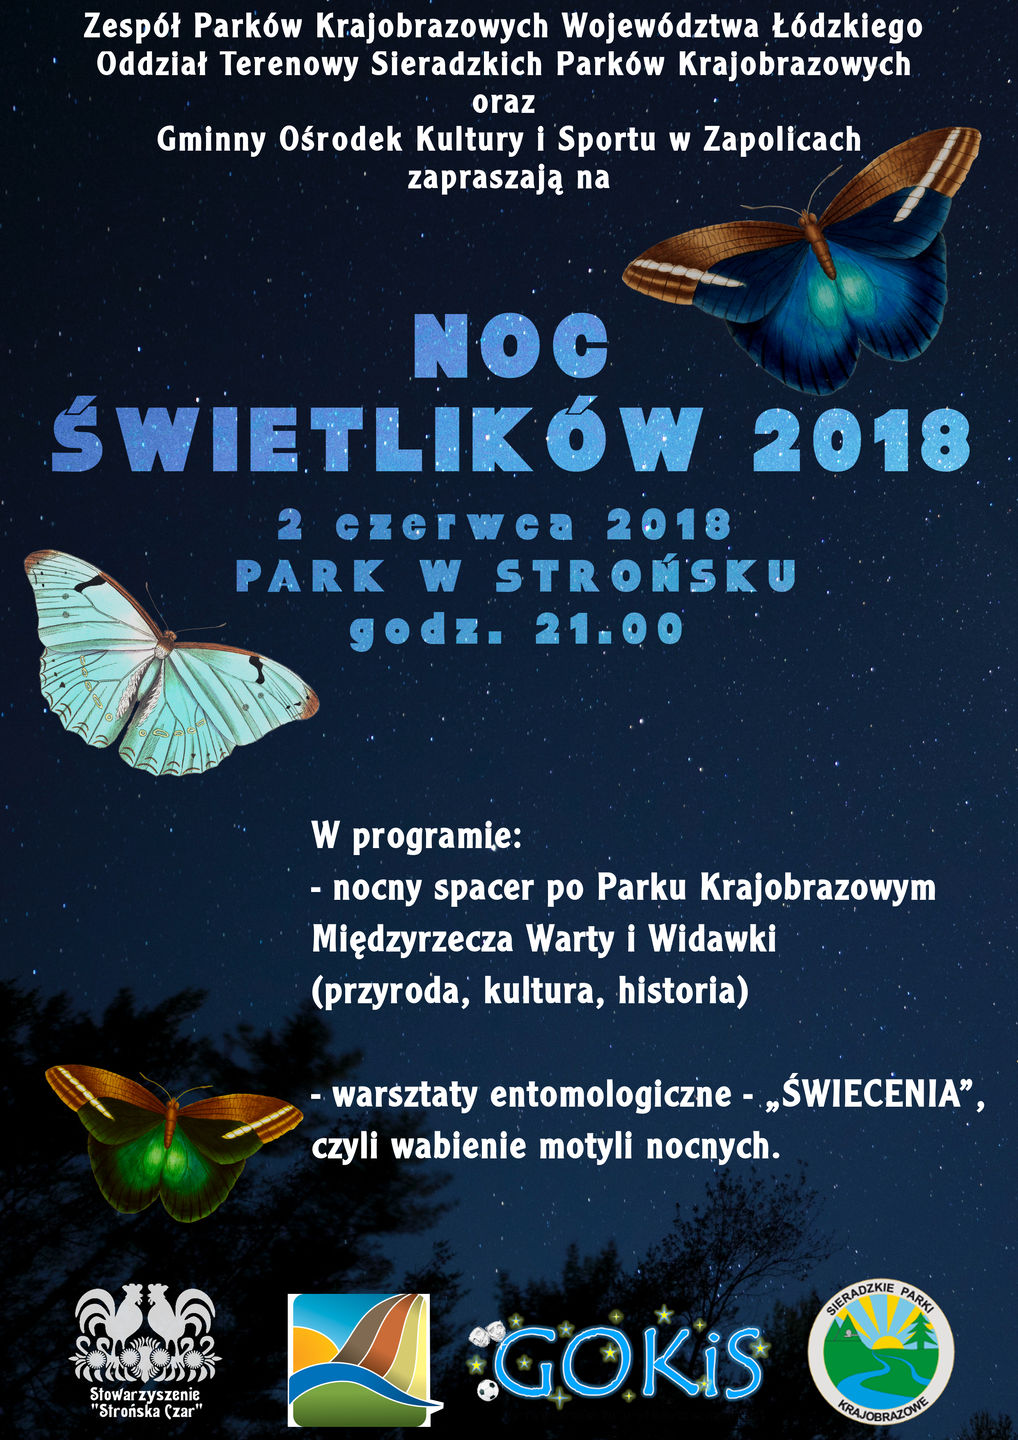 noc swietlikow2018 1